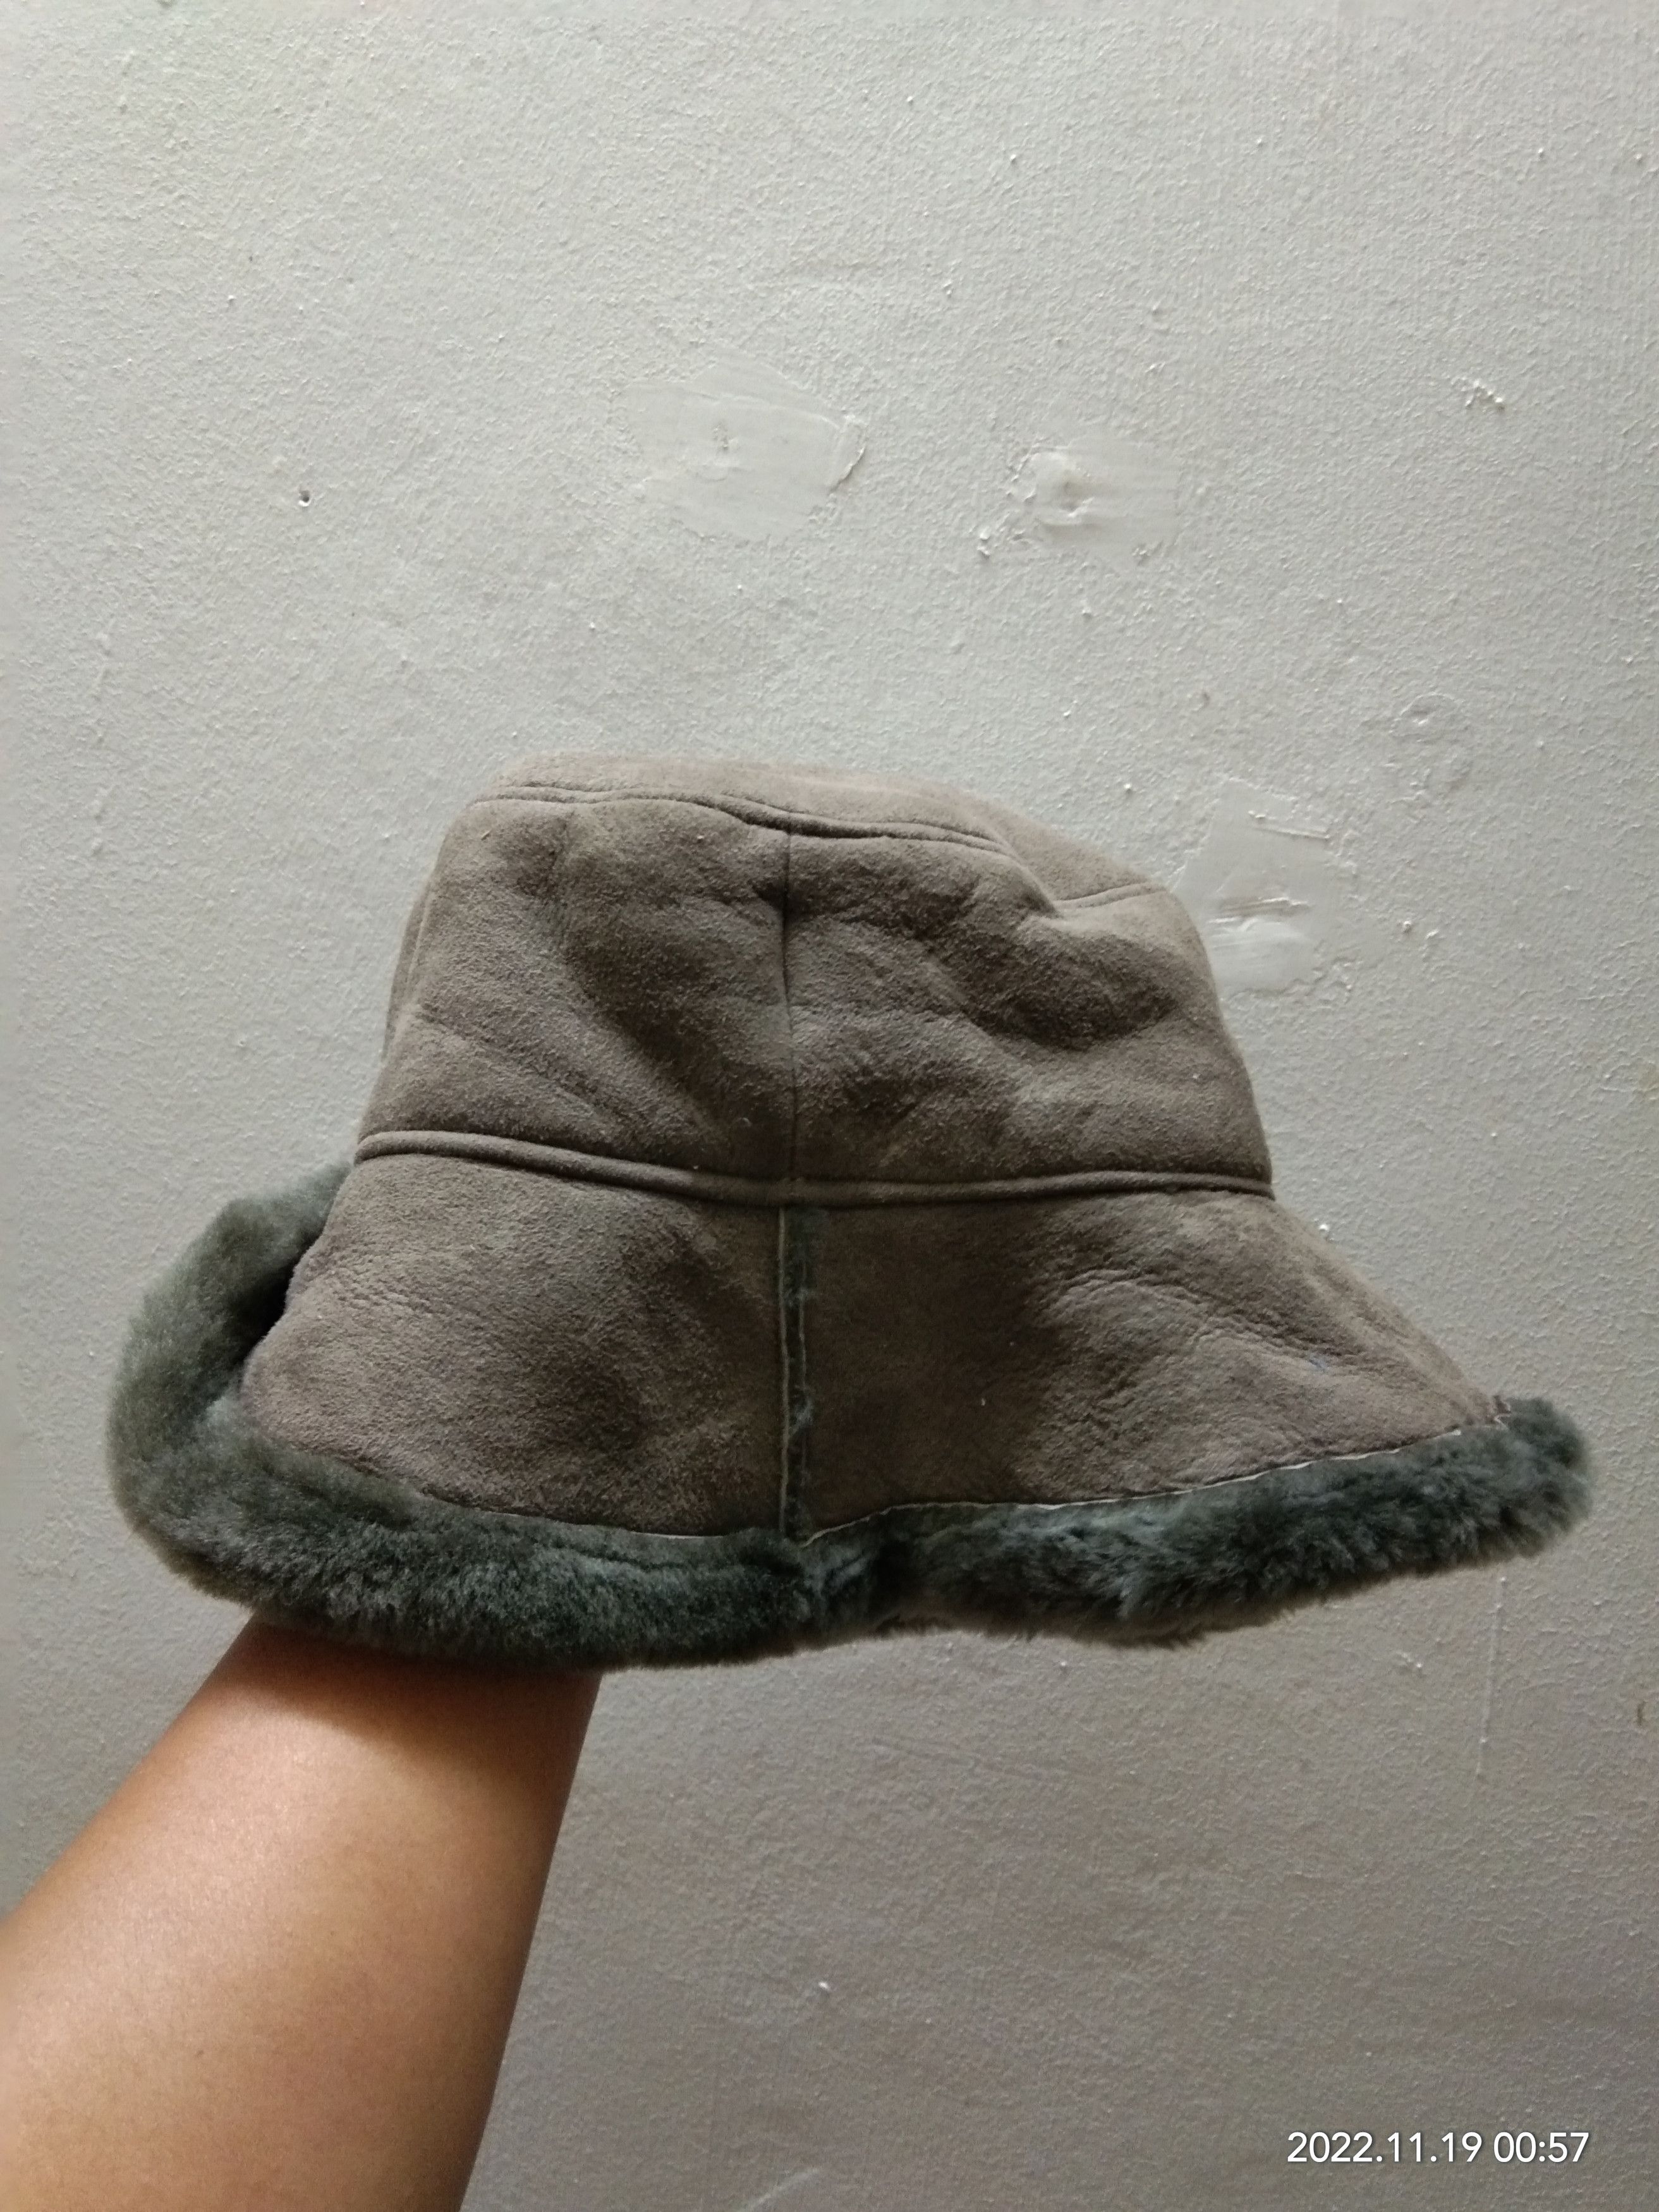 Leather - OWEN BARRY SHEEPSKIN HAT - 6